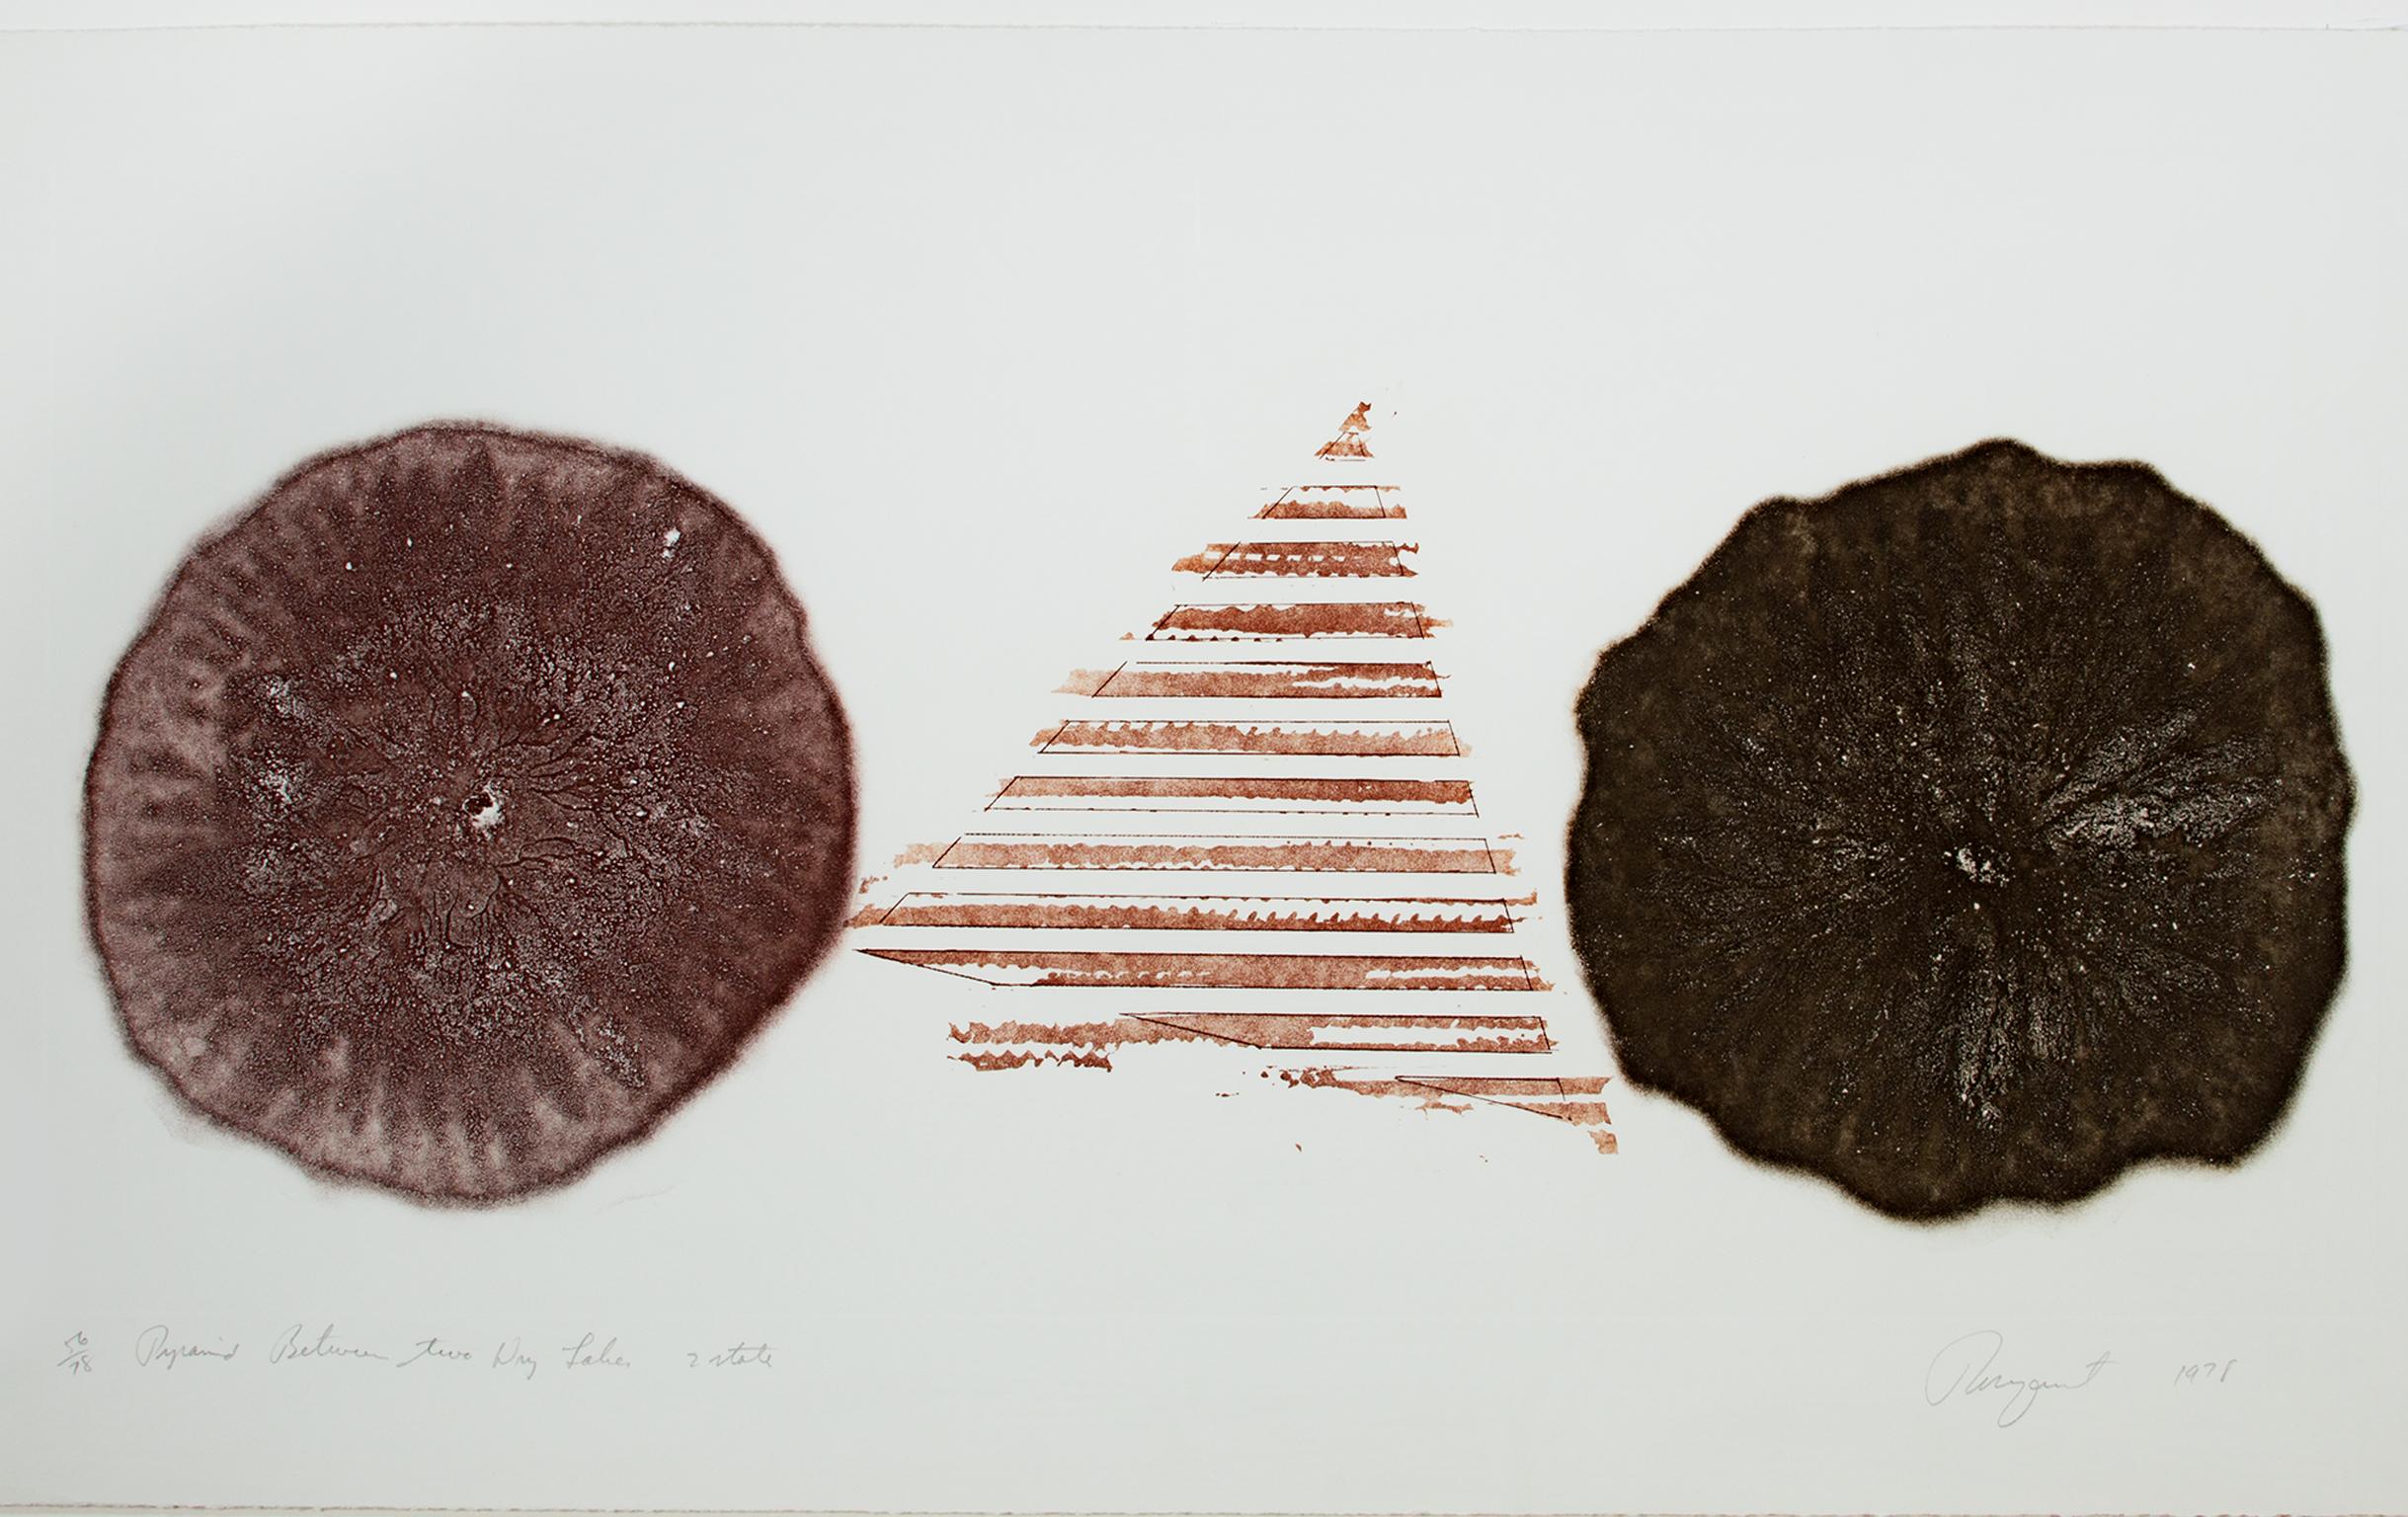 "Pyramide entre deux lacs secs" est une gravure et aquatinte originale de James Rosenquist. L'artiste a signé l'œuvre en bas à droite et a inscrit le titre et le numéro d'édition (56/78) en bas à gauche. C'est le deuxième état et il est en brun.